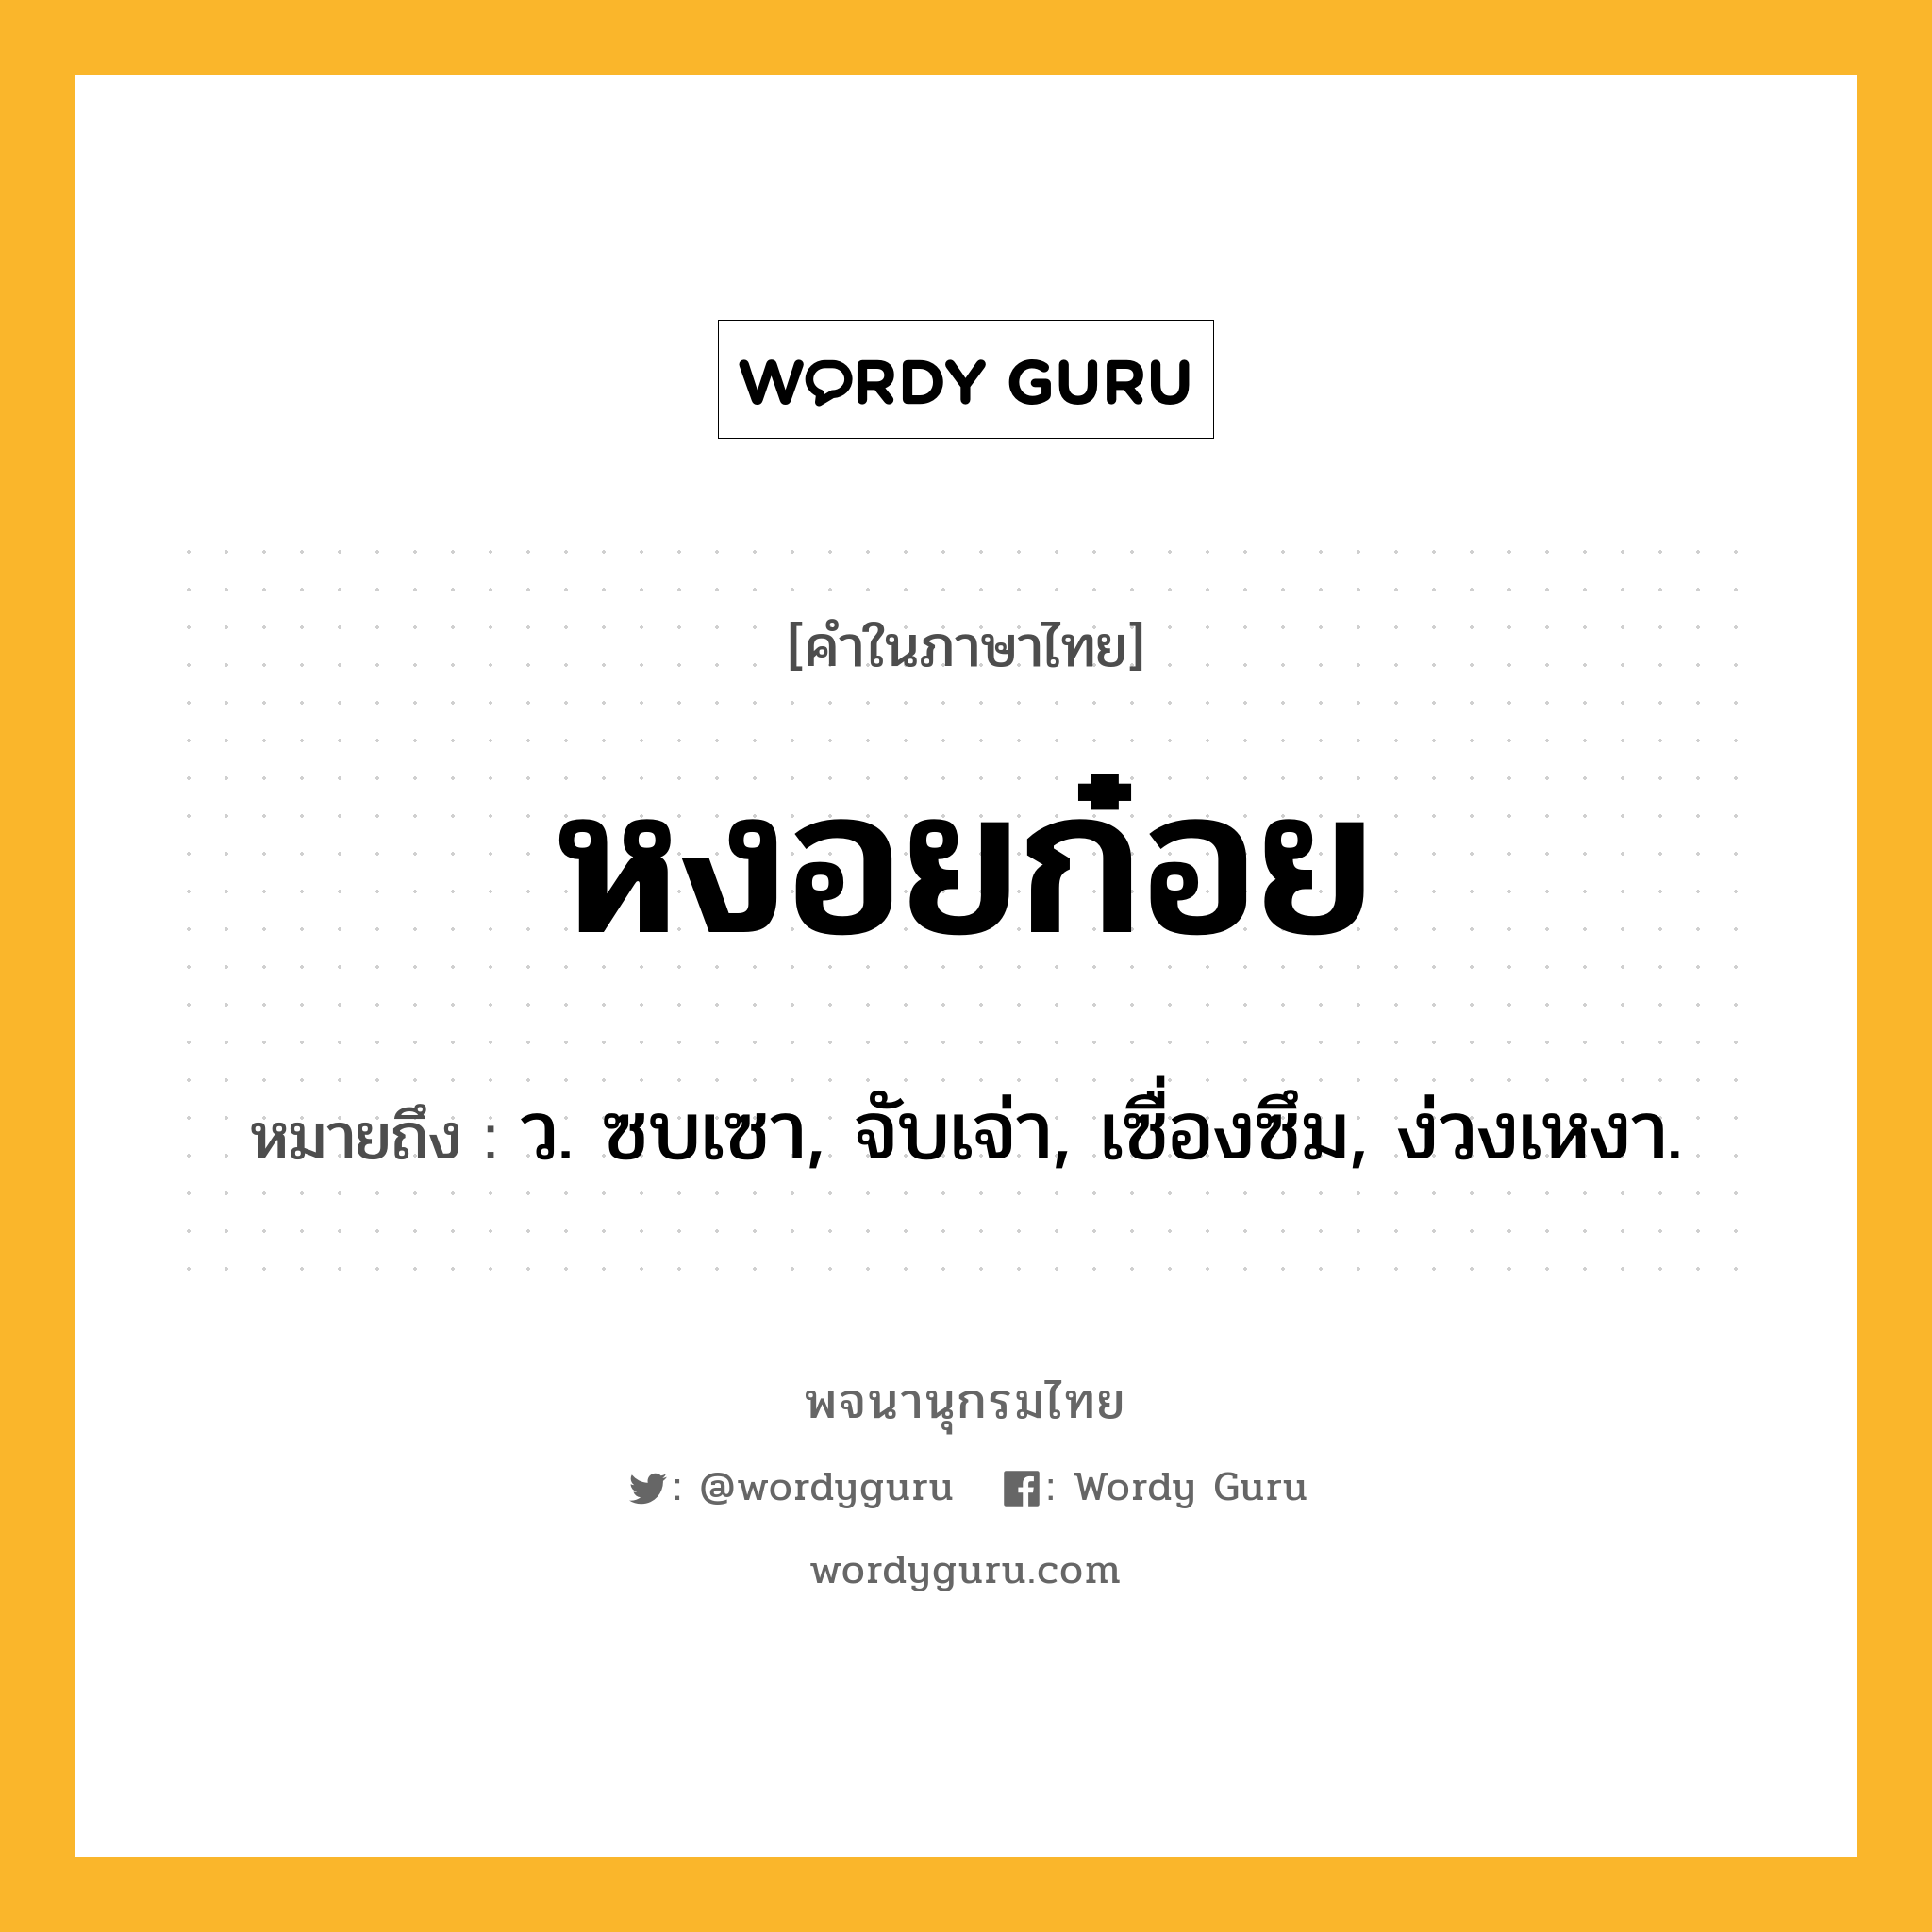 หงอยก๋อย หมายถึงอะไร?, คำในภาษาไทย หงอยก๋อย หมายถึง ว. ซบเซา, จับเจ่า, เซื่องซึม, ง่วงเหงา.